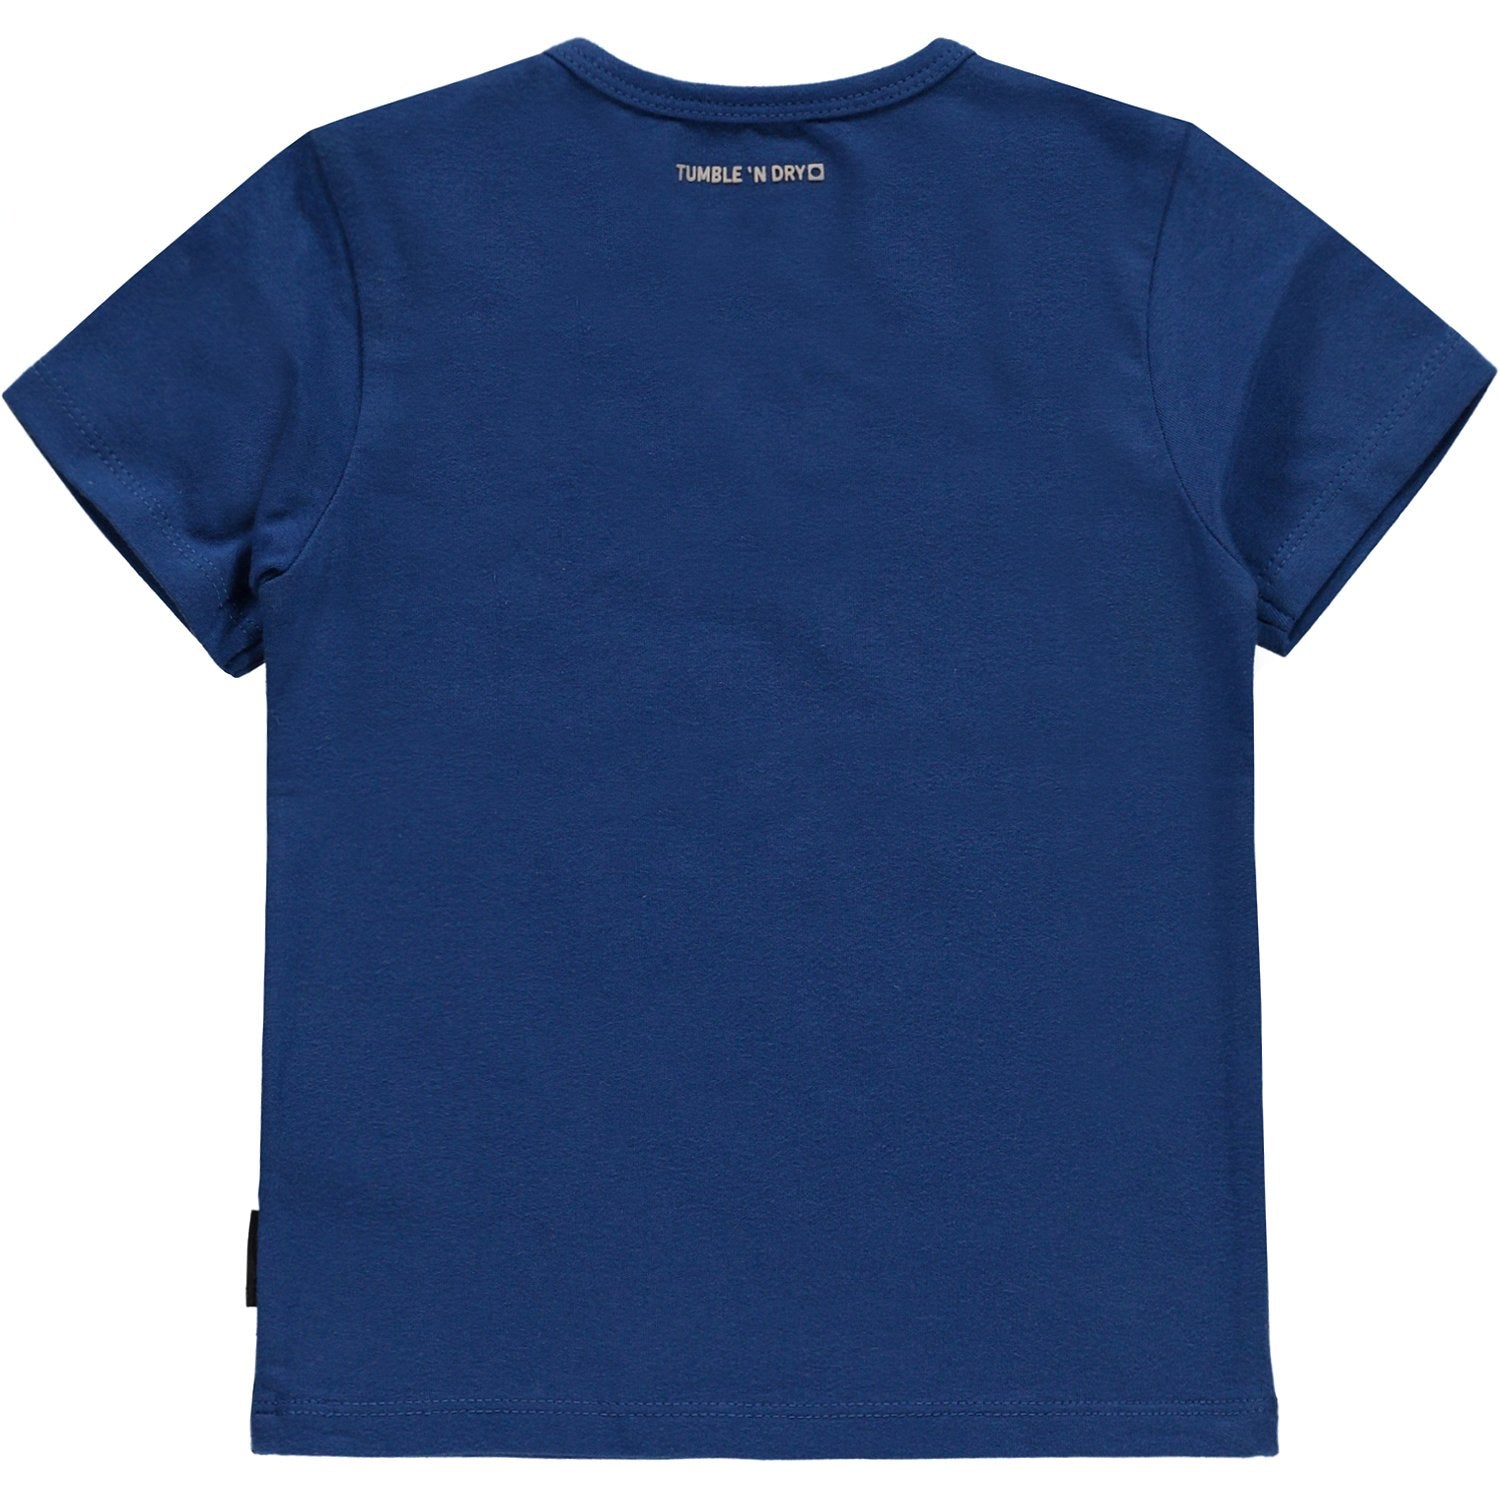 Baby Jongens T-shirt Km O-hals van Tumble 'n Dry in de kleur Limoges in maat 86.